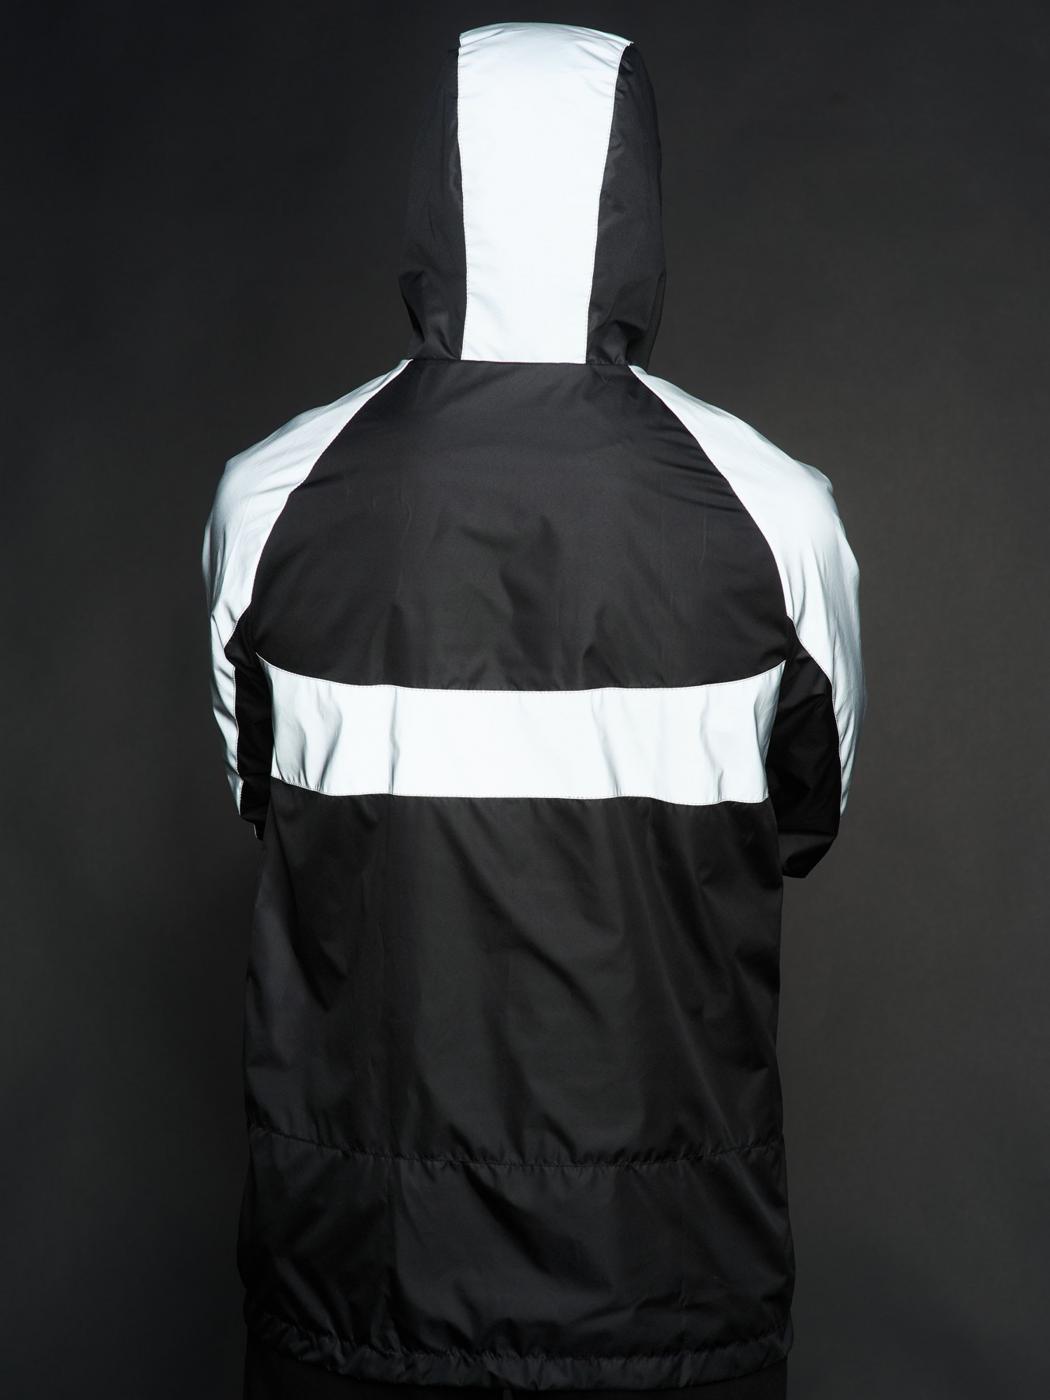 Вітрівка чоловіча Athletic чорна/рефлективна Custom Wear  - Фото 1